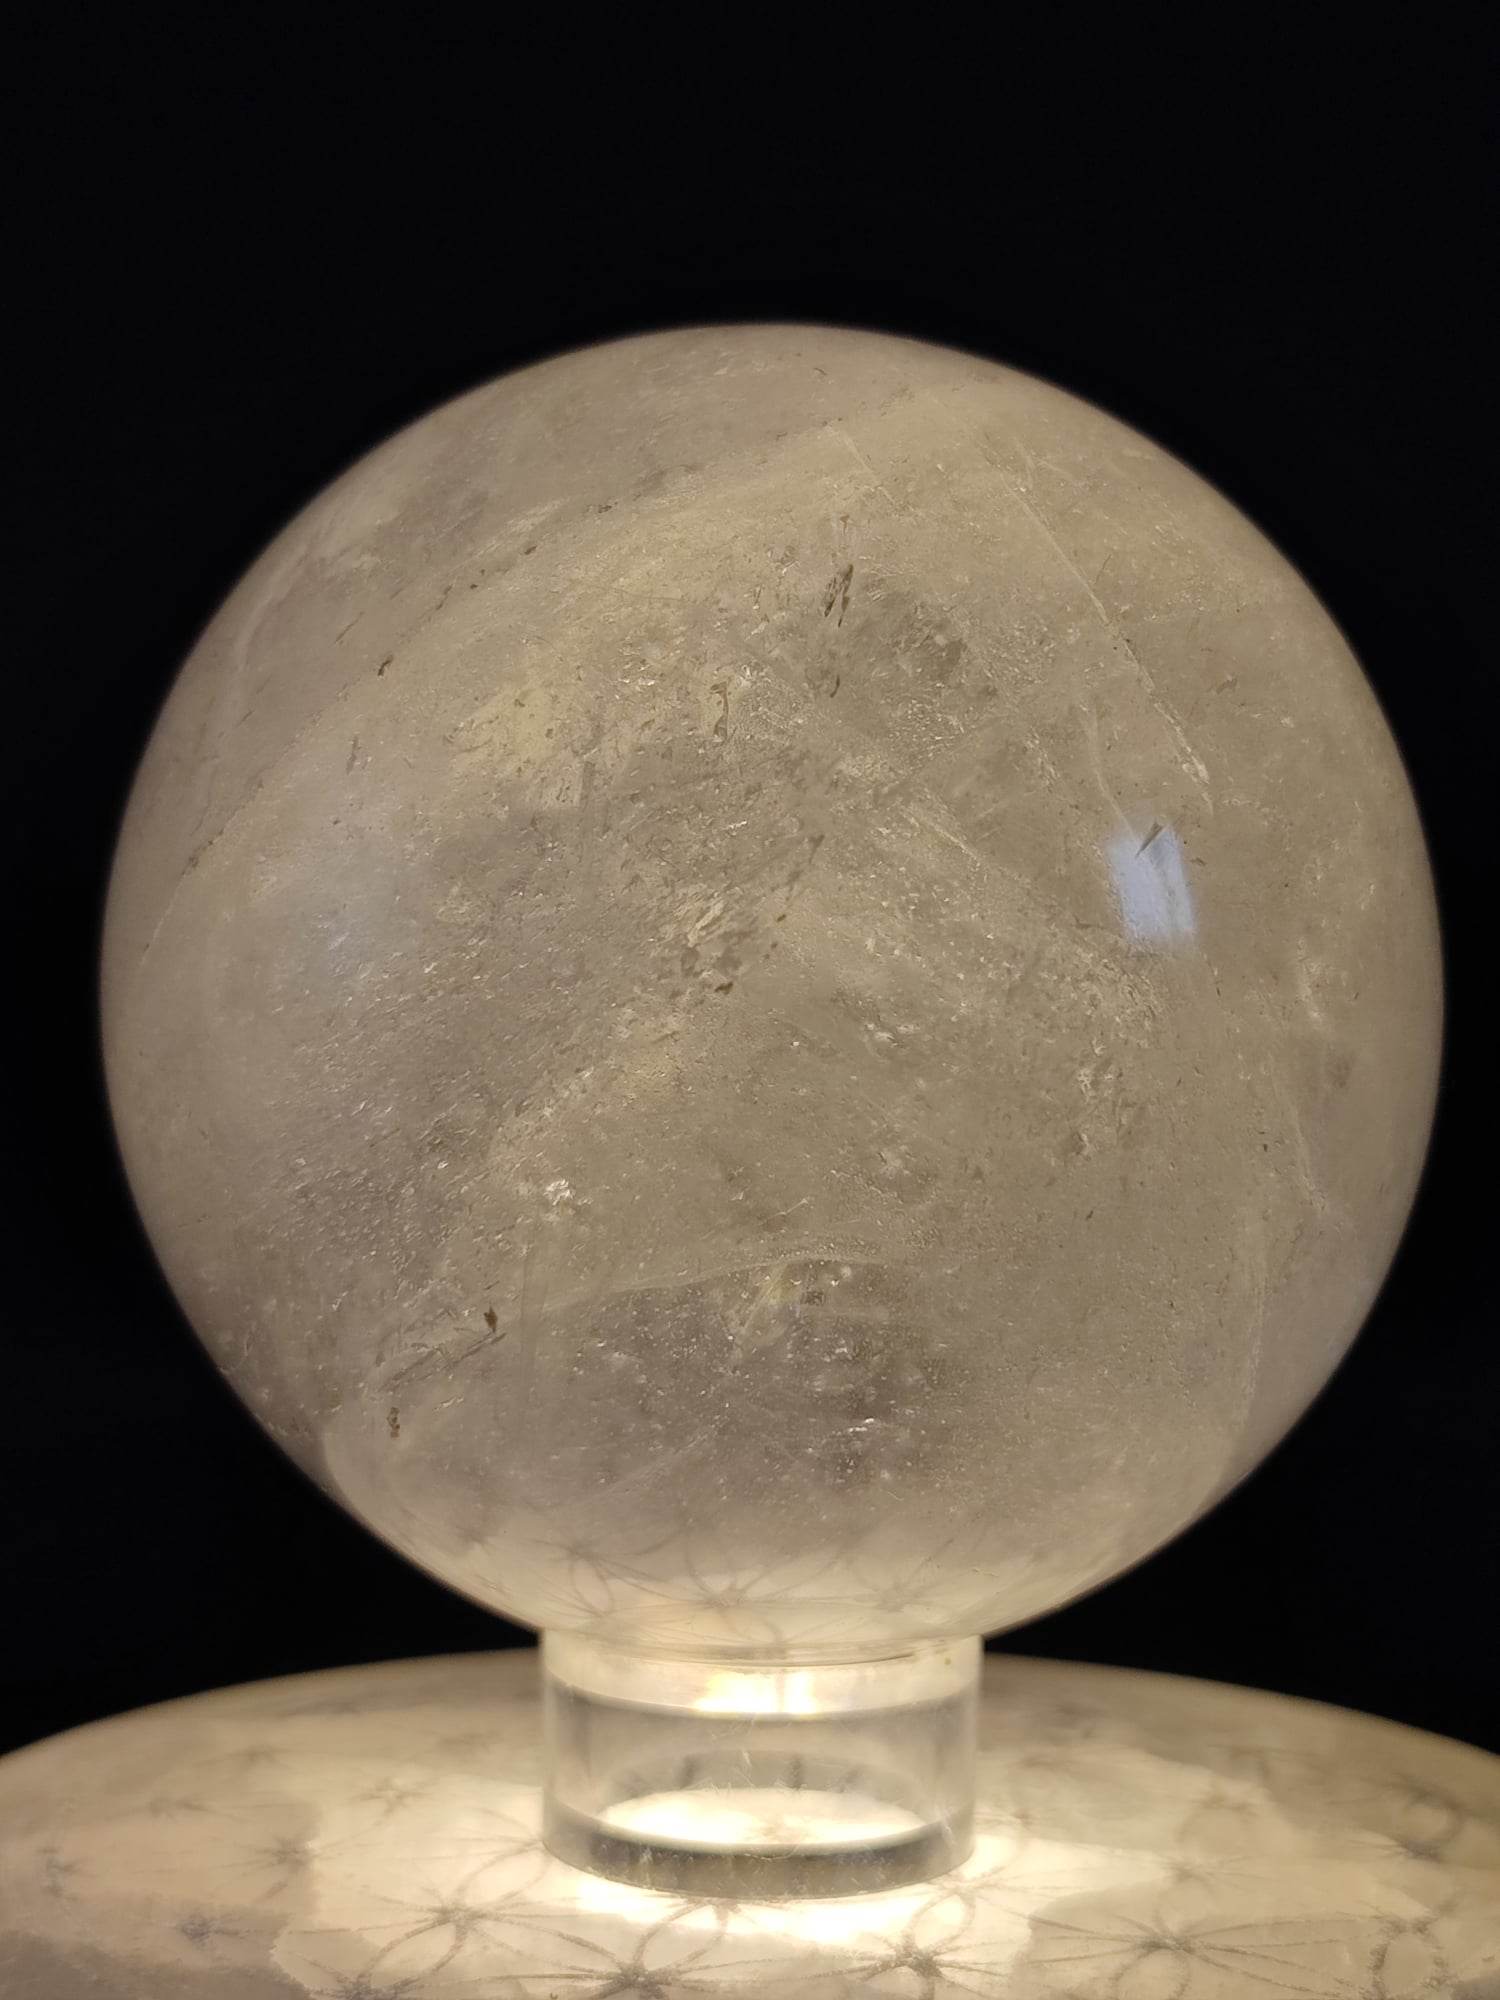 Boule de Cristal – Tiki Perle